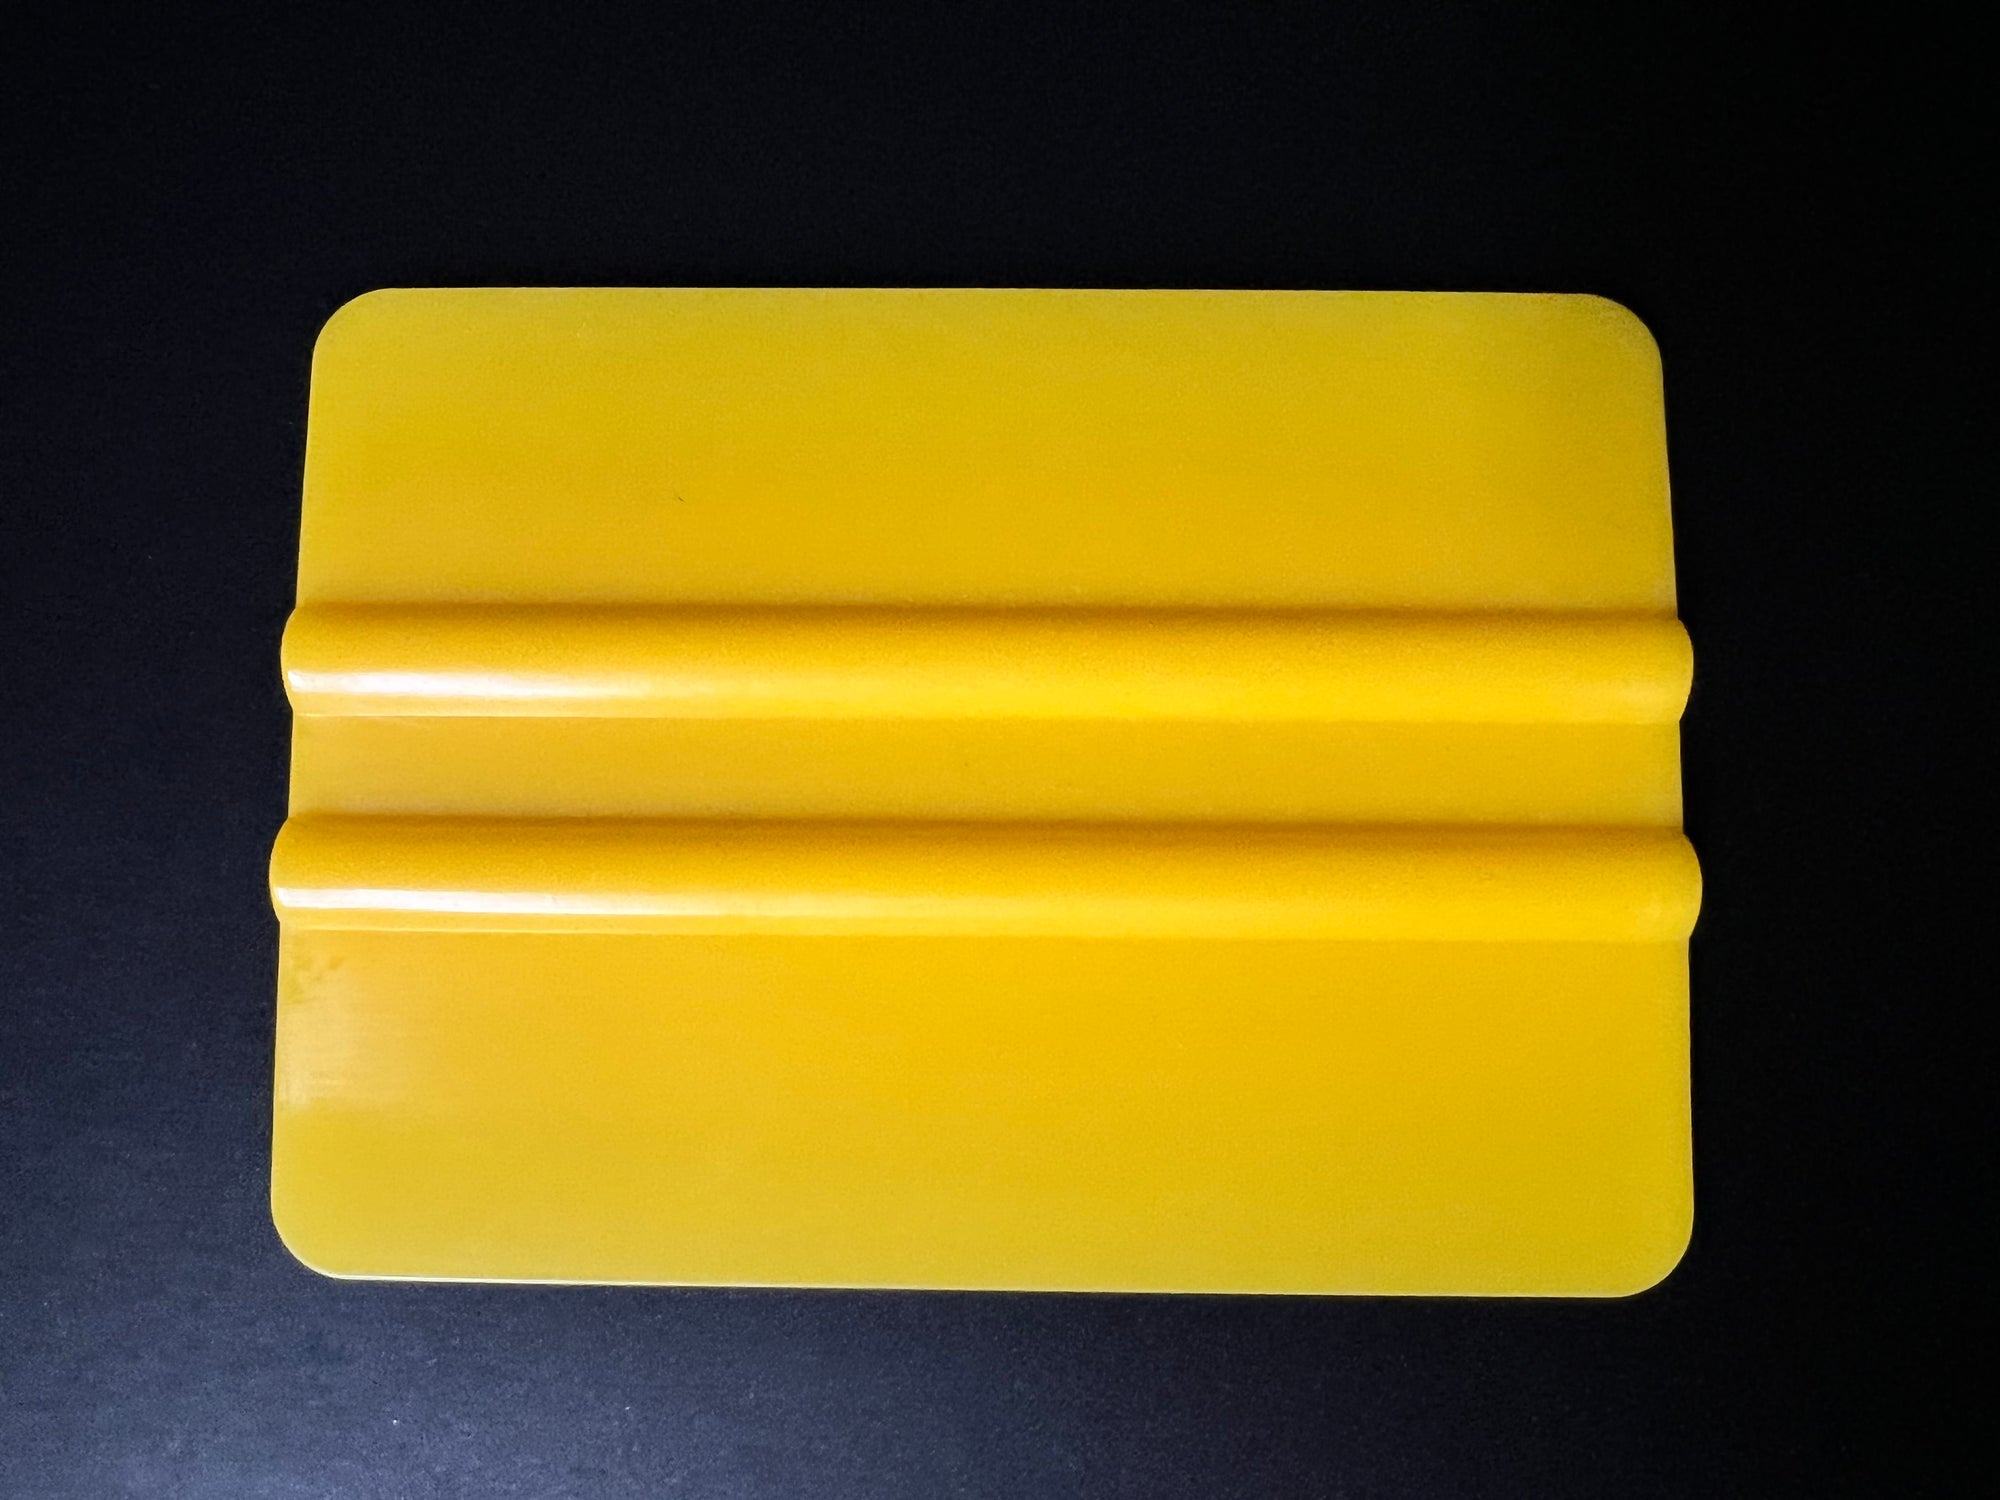 Yellow Nylon Squeegee vinyl applicator